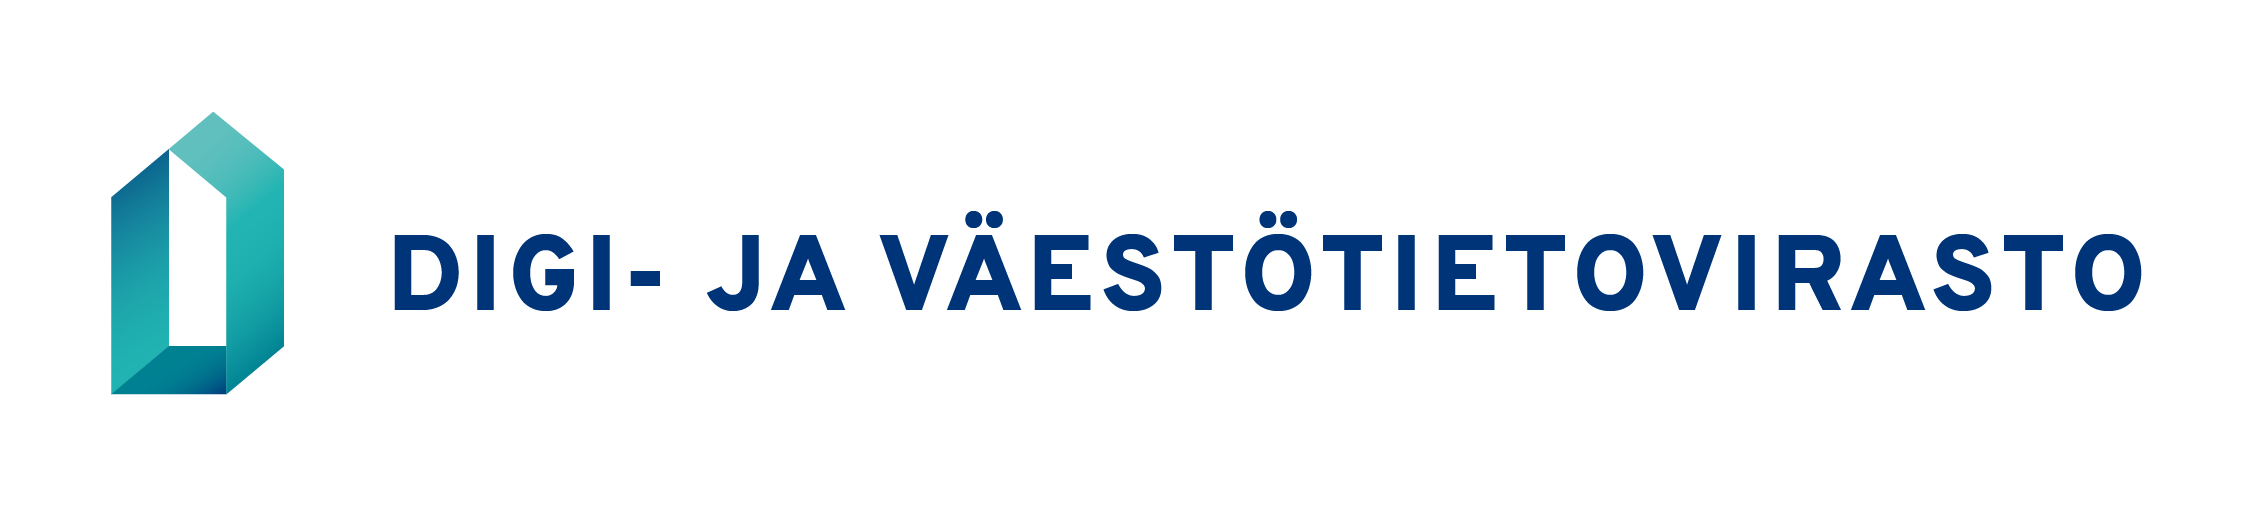 Logotyp: Myndigheten för digitalisering och befolkningsdata. Logotyp på finska, horisontell